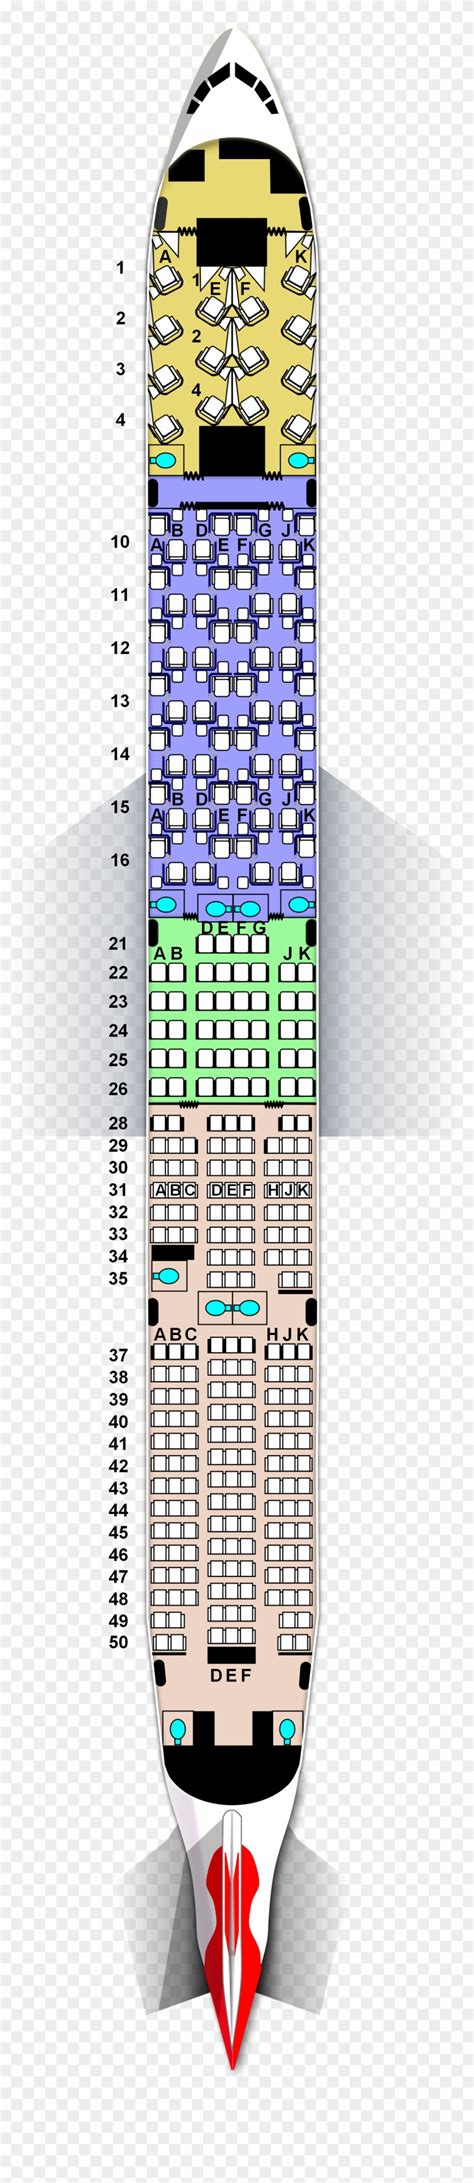 Boeing 777 200er Seat Map